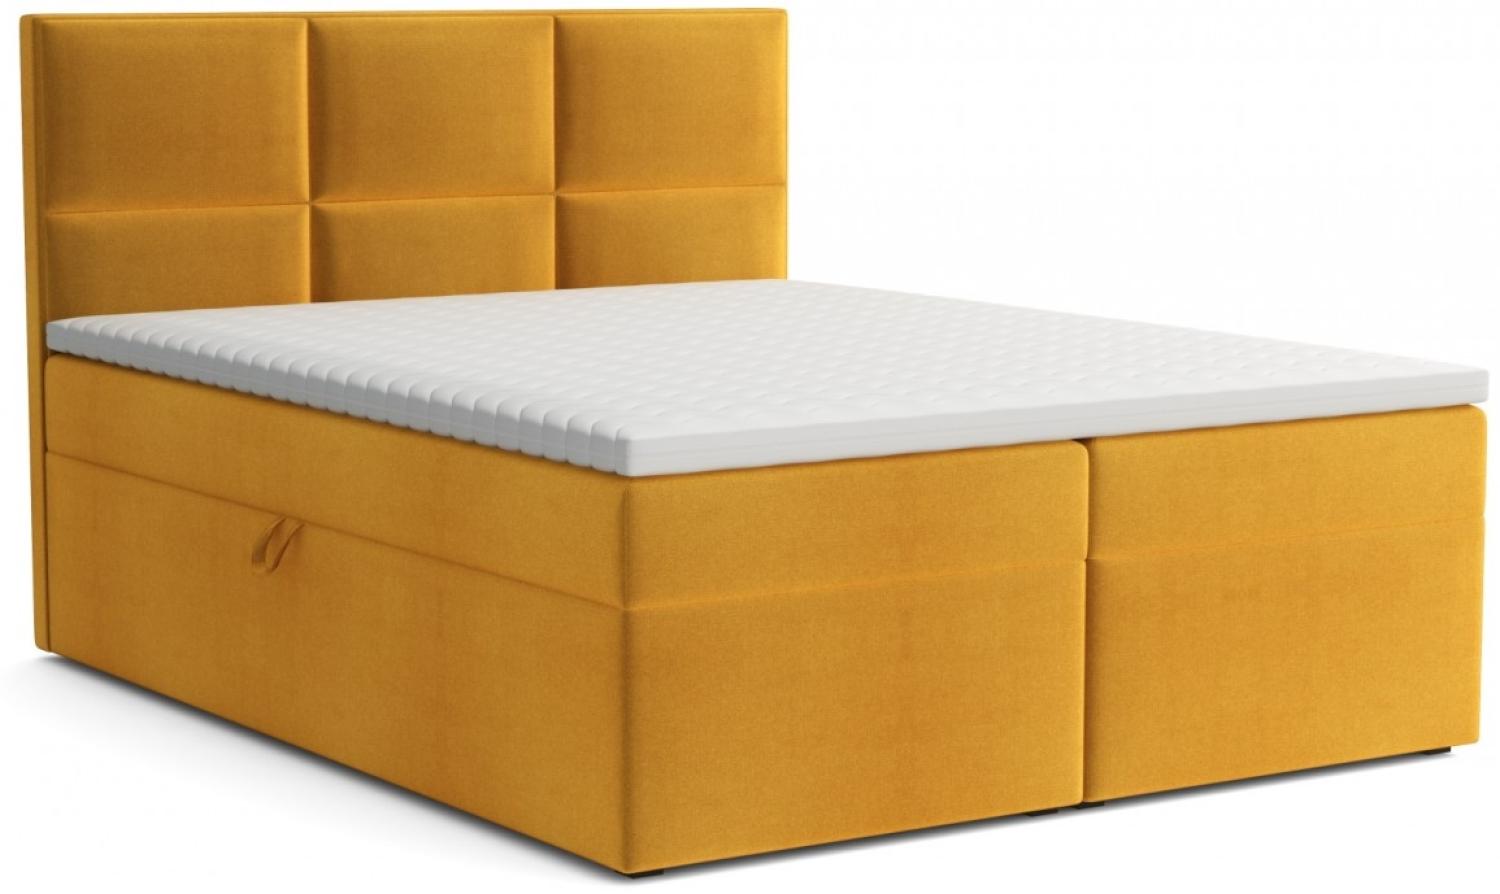 Boxspringbett Bobly mit zwei Bettkasten und Topper gelb 200 x 200 cm Bild 1